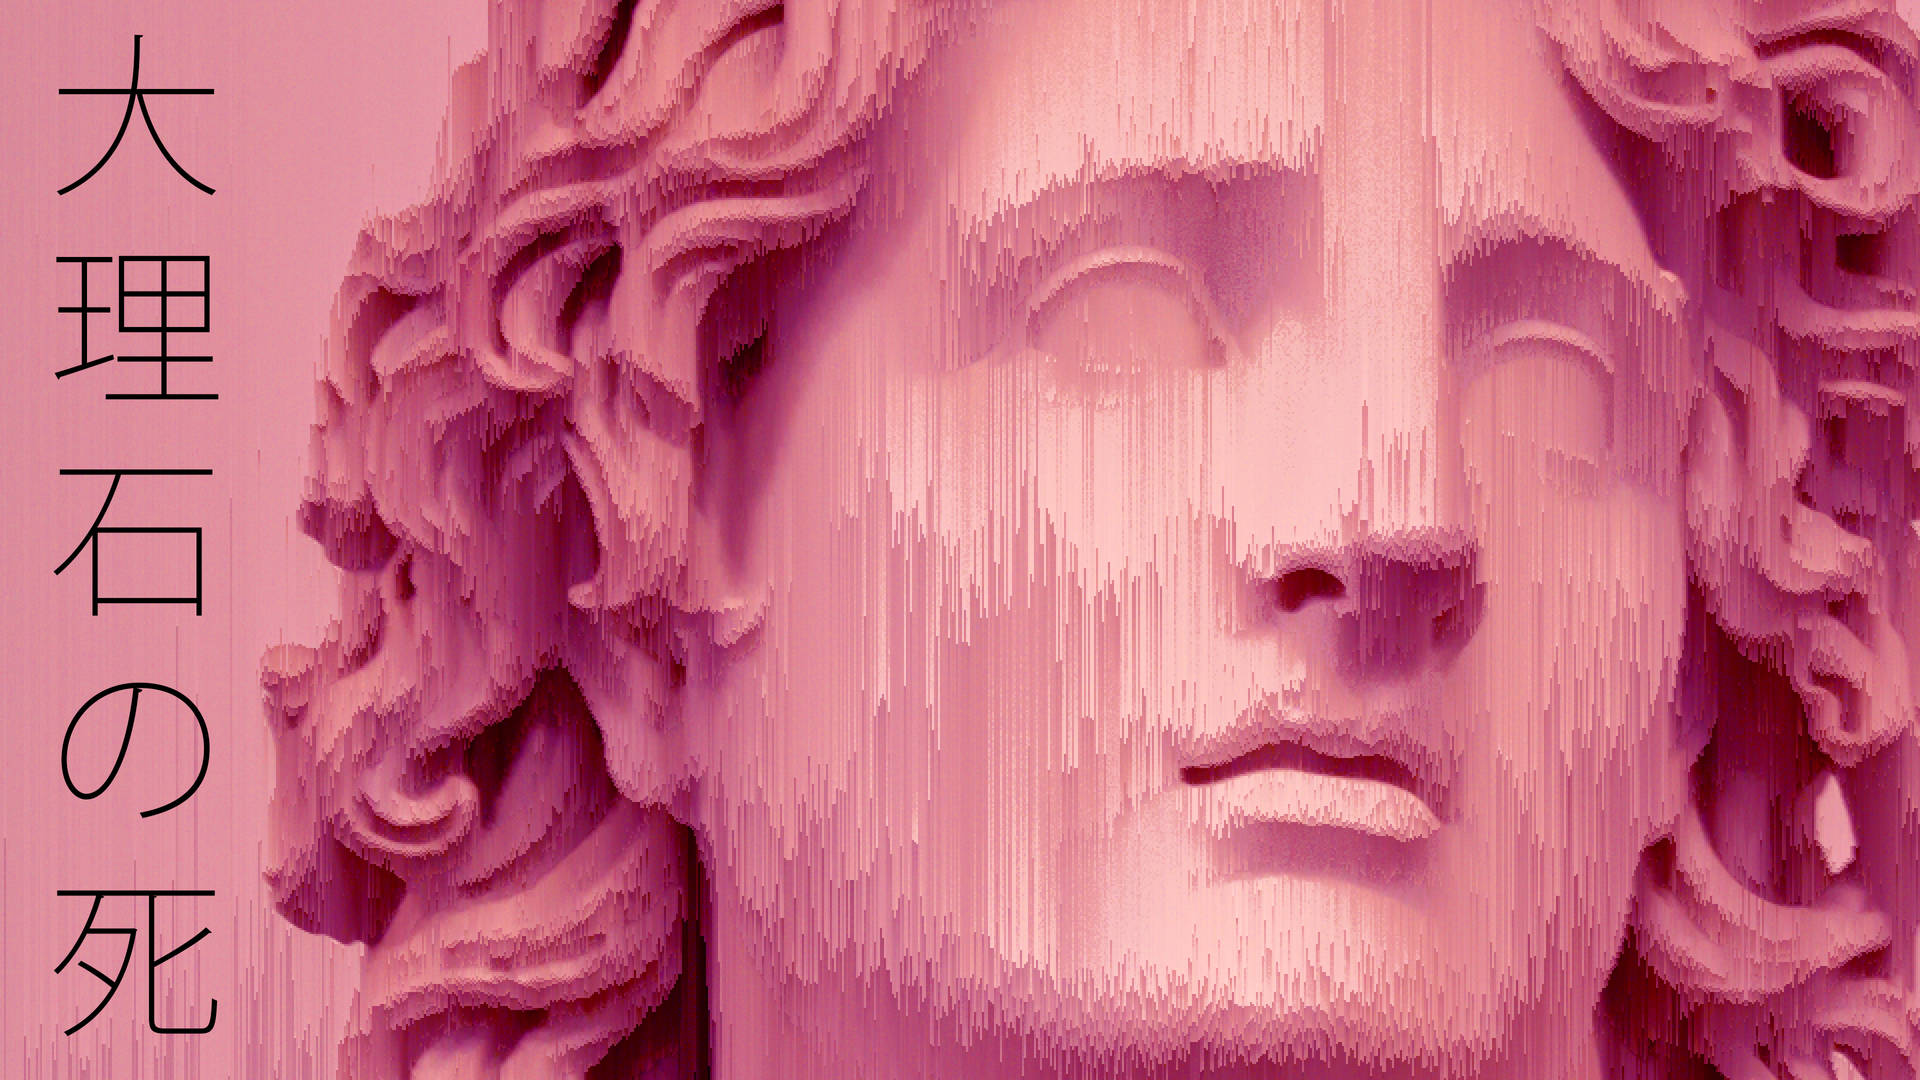 Marmor Græsk Statue Vaporwave Desktop Wallpaper